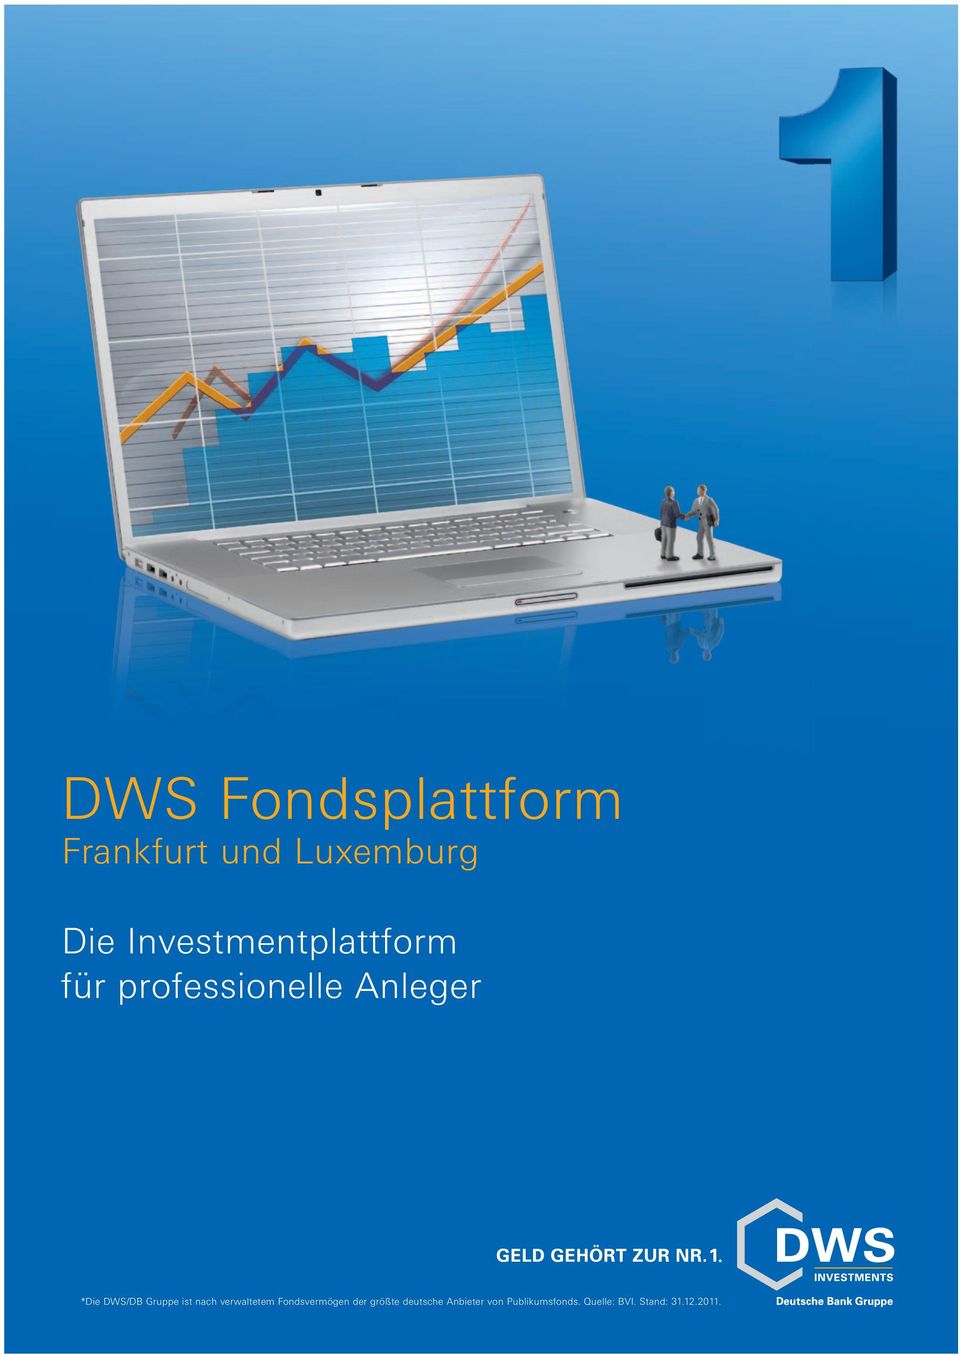 DWS/DB Gruppe ist nach verwaltetem Fondsvermögen der